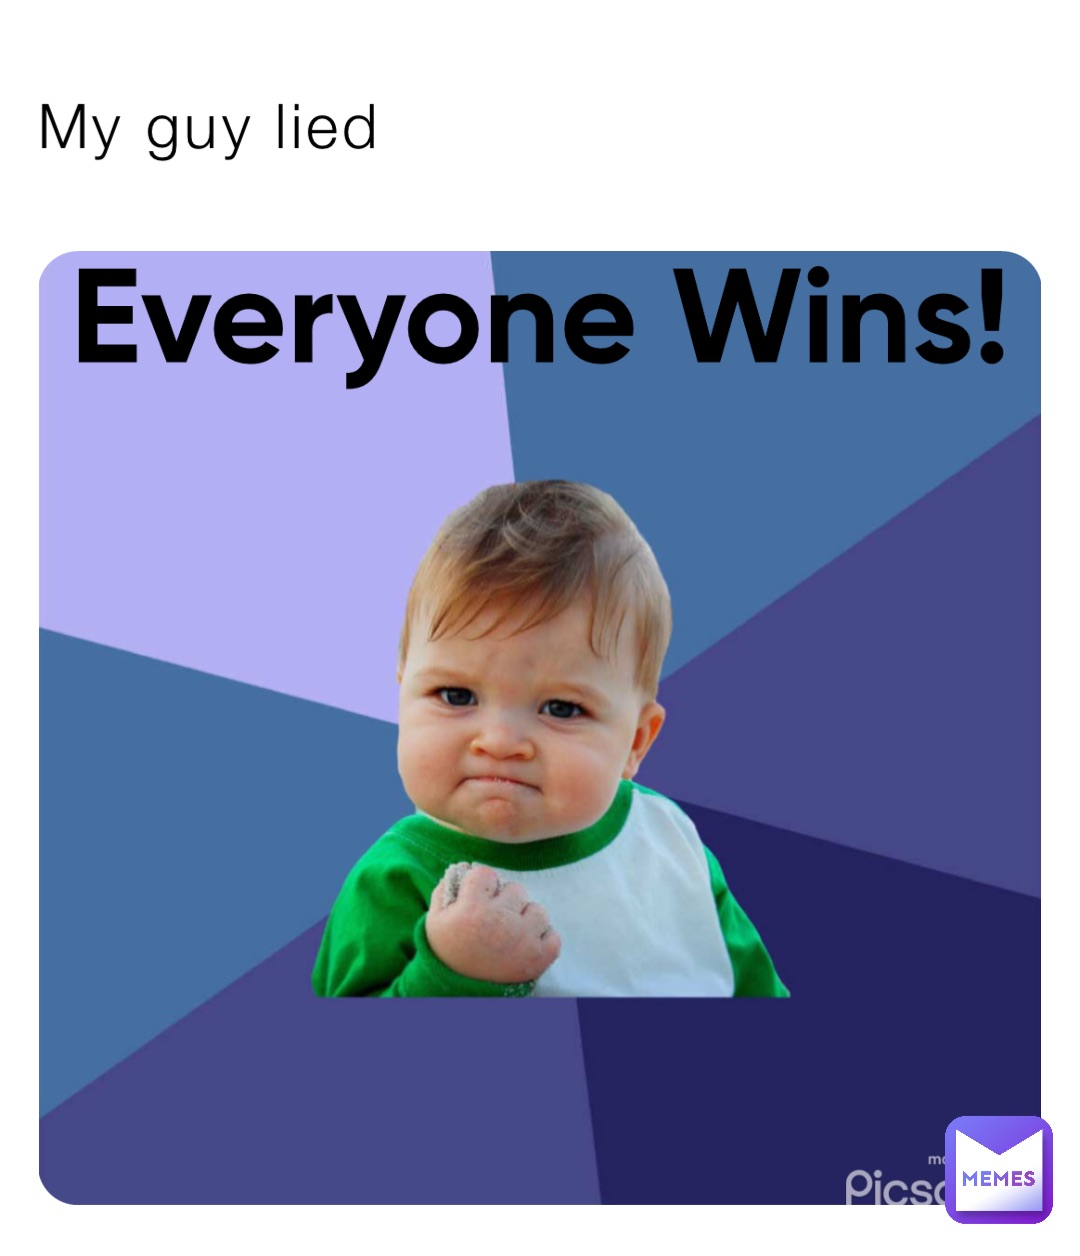 victory guy meme